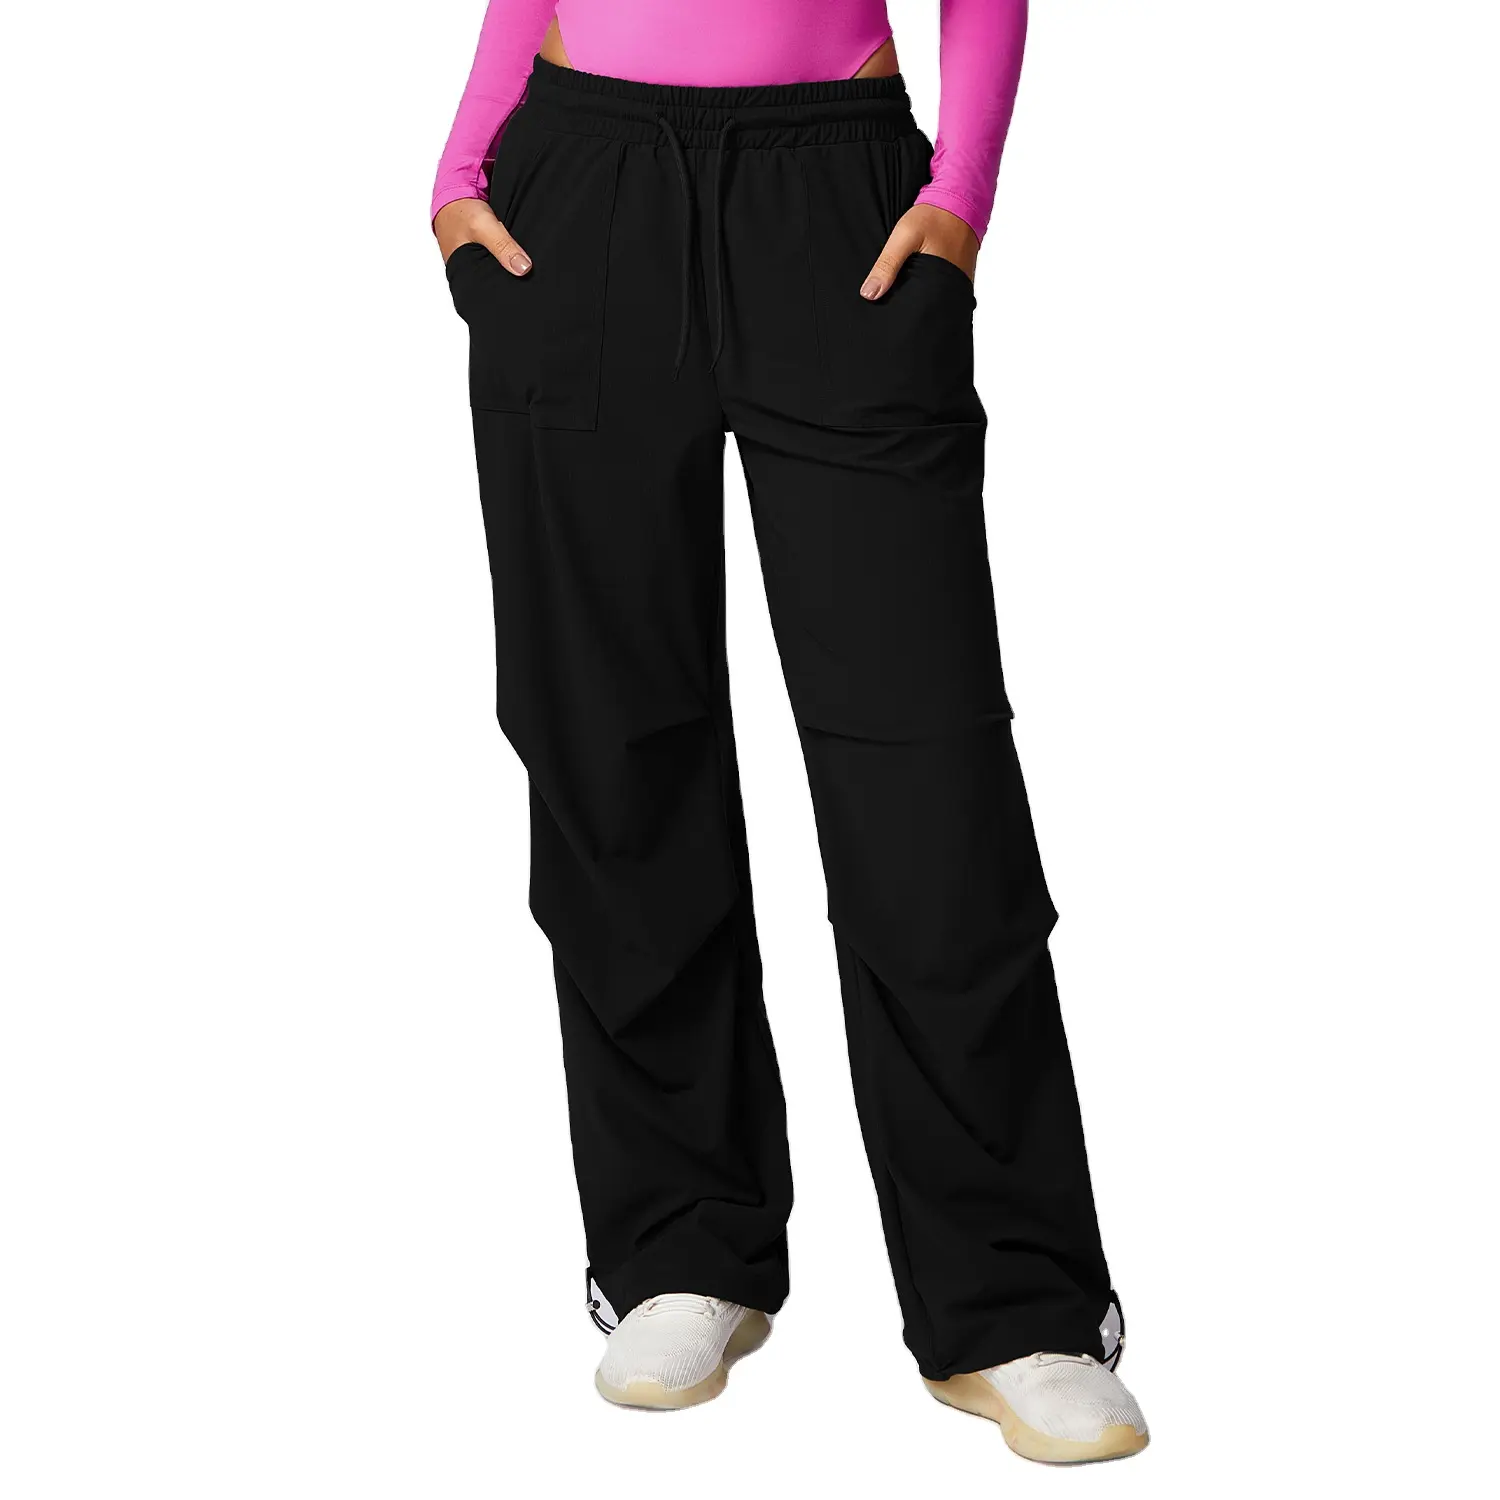 Calças de ioga anti-ultravioleta para exercícios, calças curtas de corrida com borracha até a cintura para exercícios, calças de ioga de secagem rápida e anti-ultravioleta